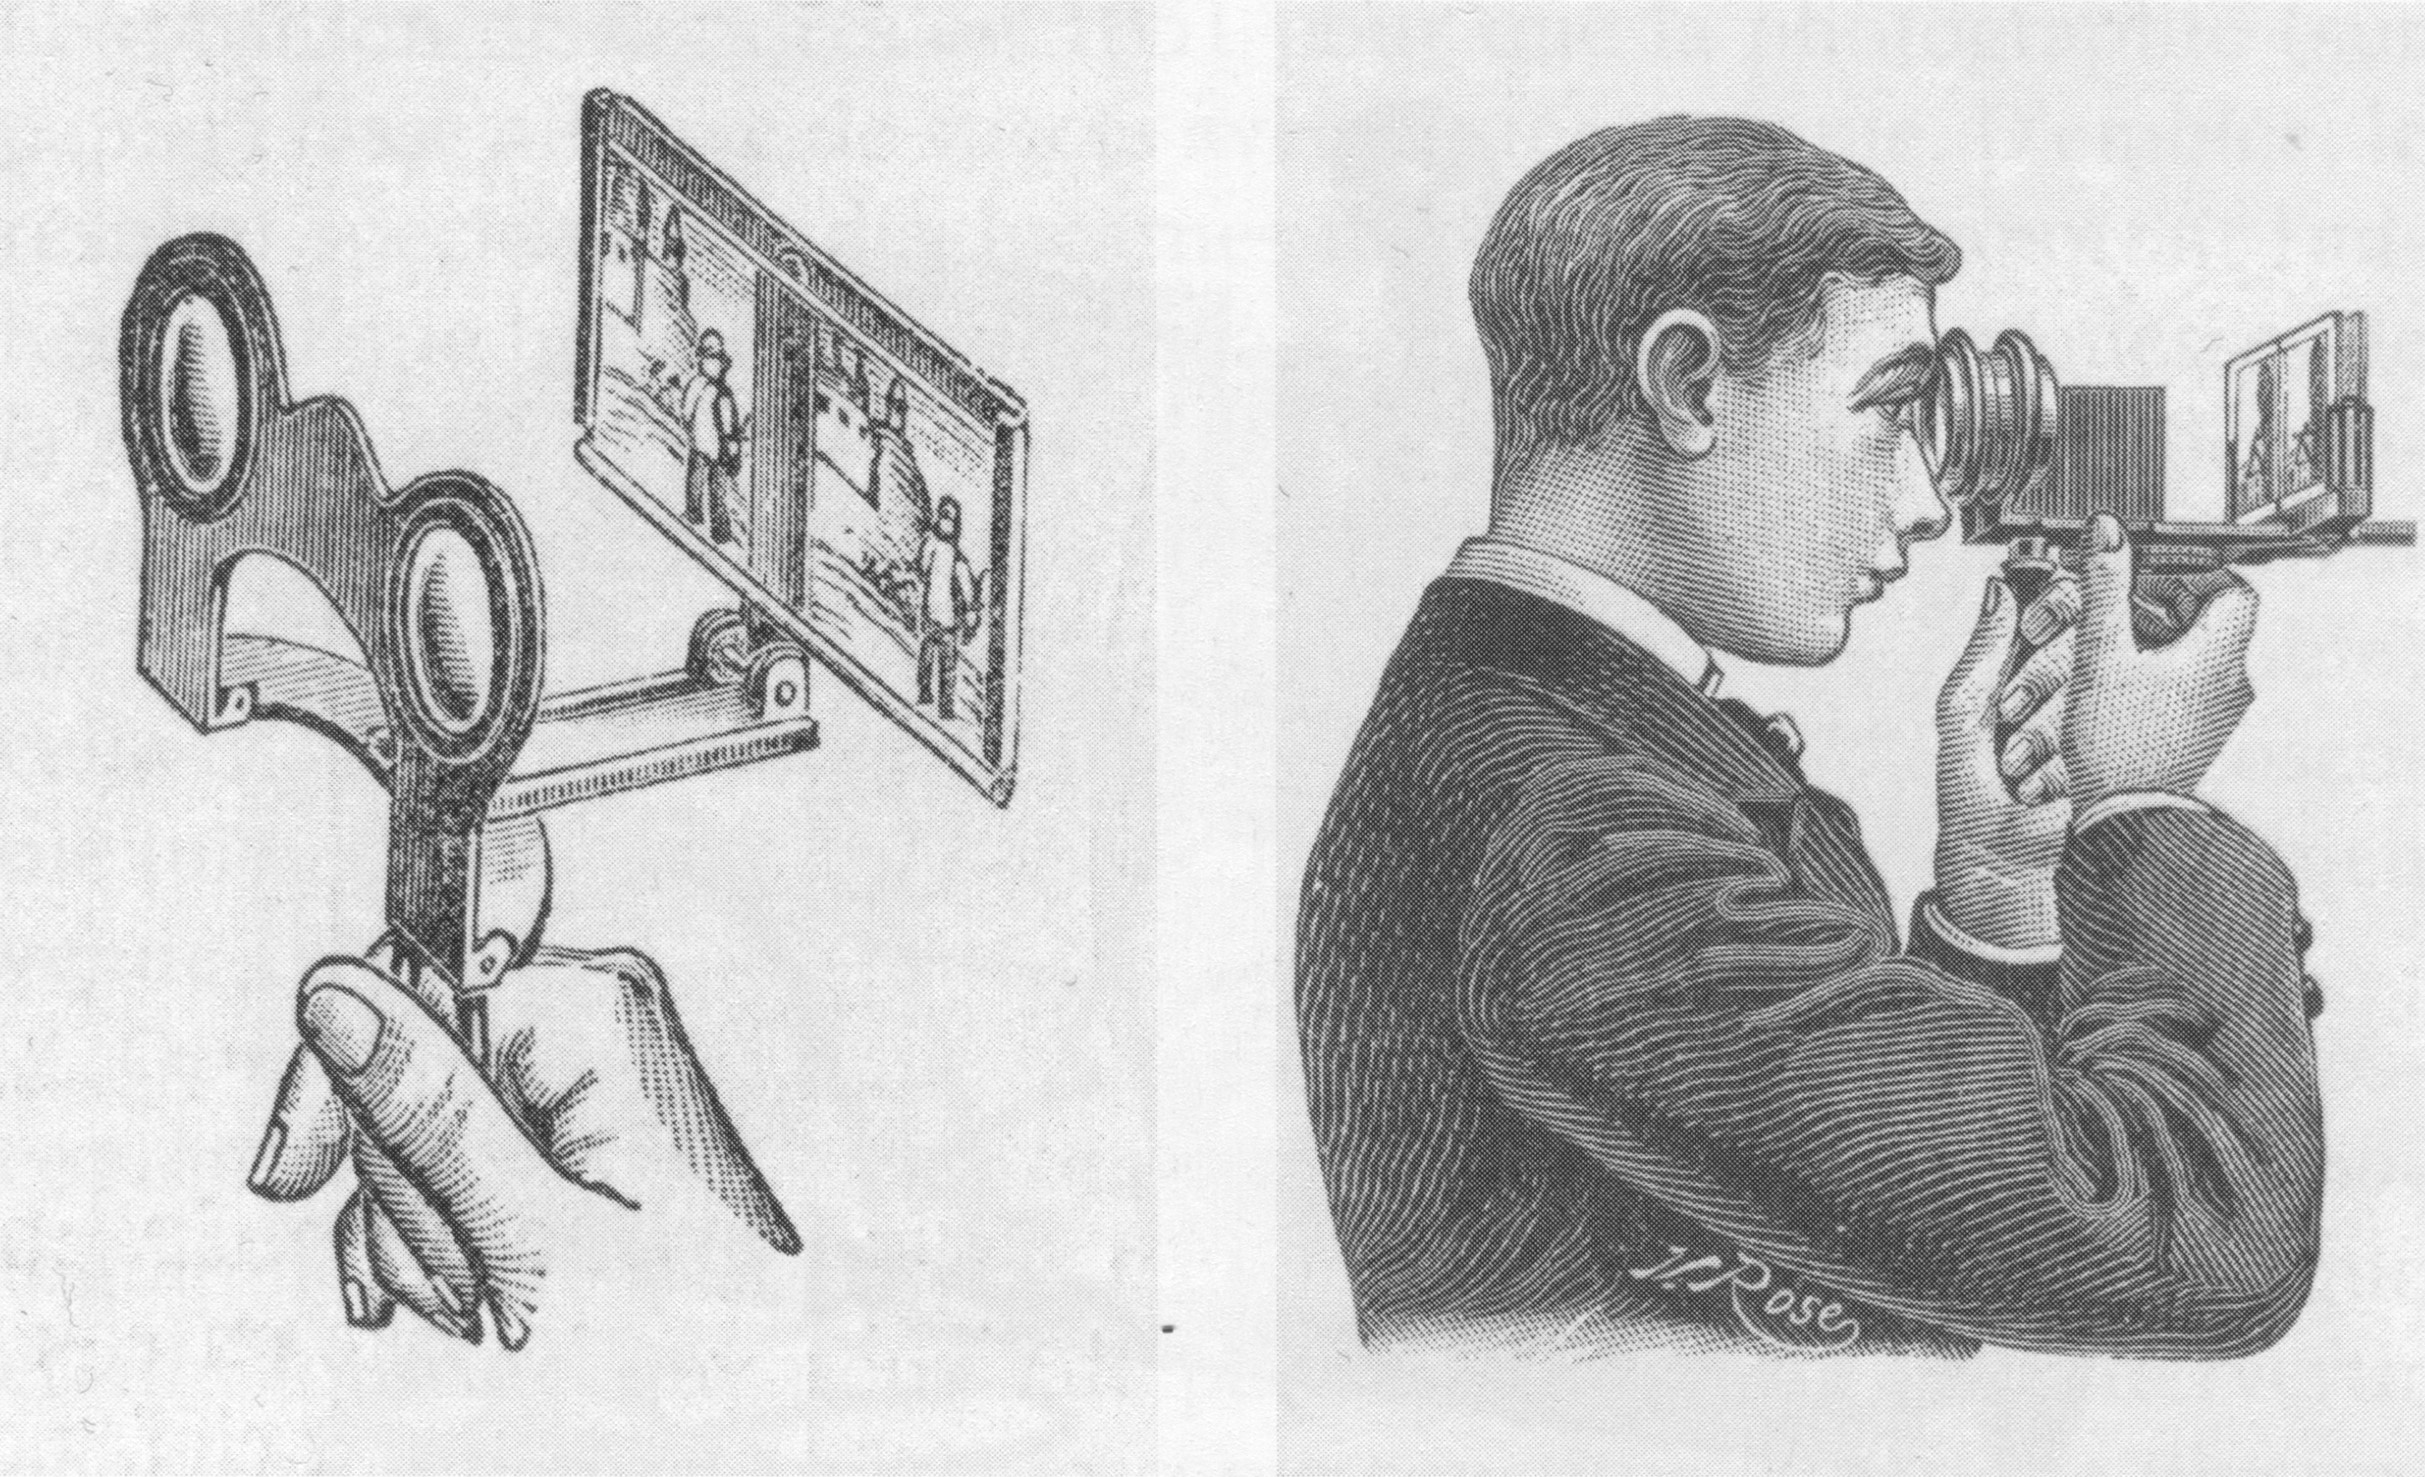 Betrachtung einer Stereofotografie durch ein Stereoskop; veröffentlicht in: Frizot, Michel. L’Homme Photographique. Une Anthologie. Paris: Hazan, 2018, S. 182